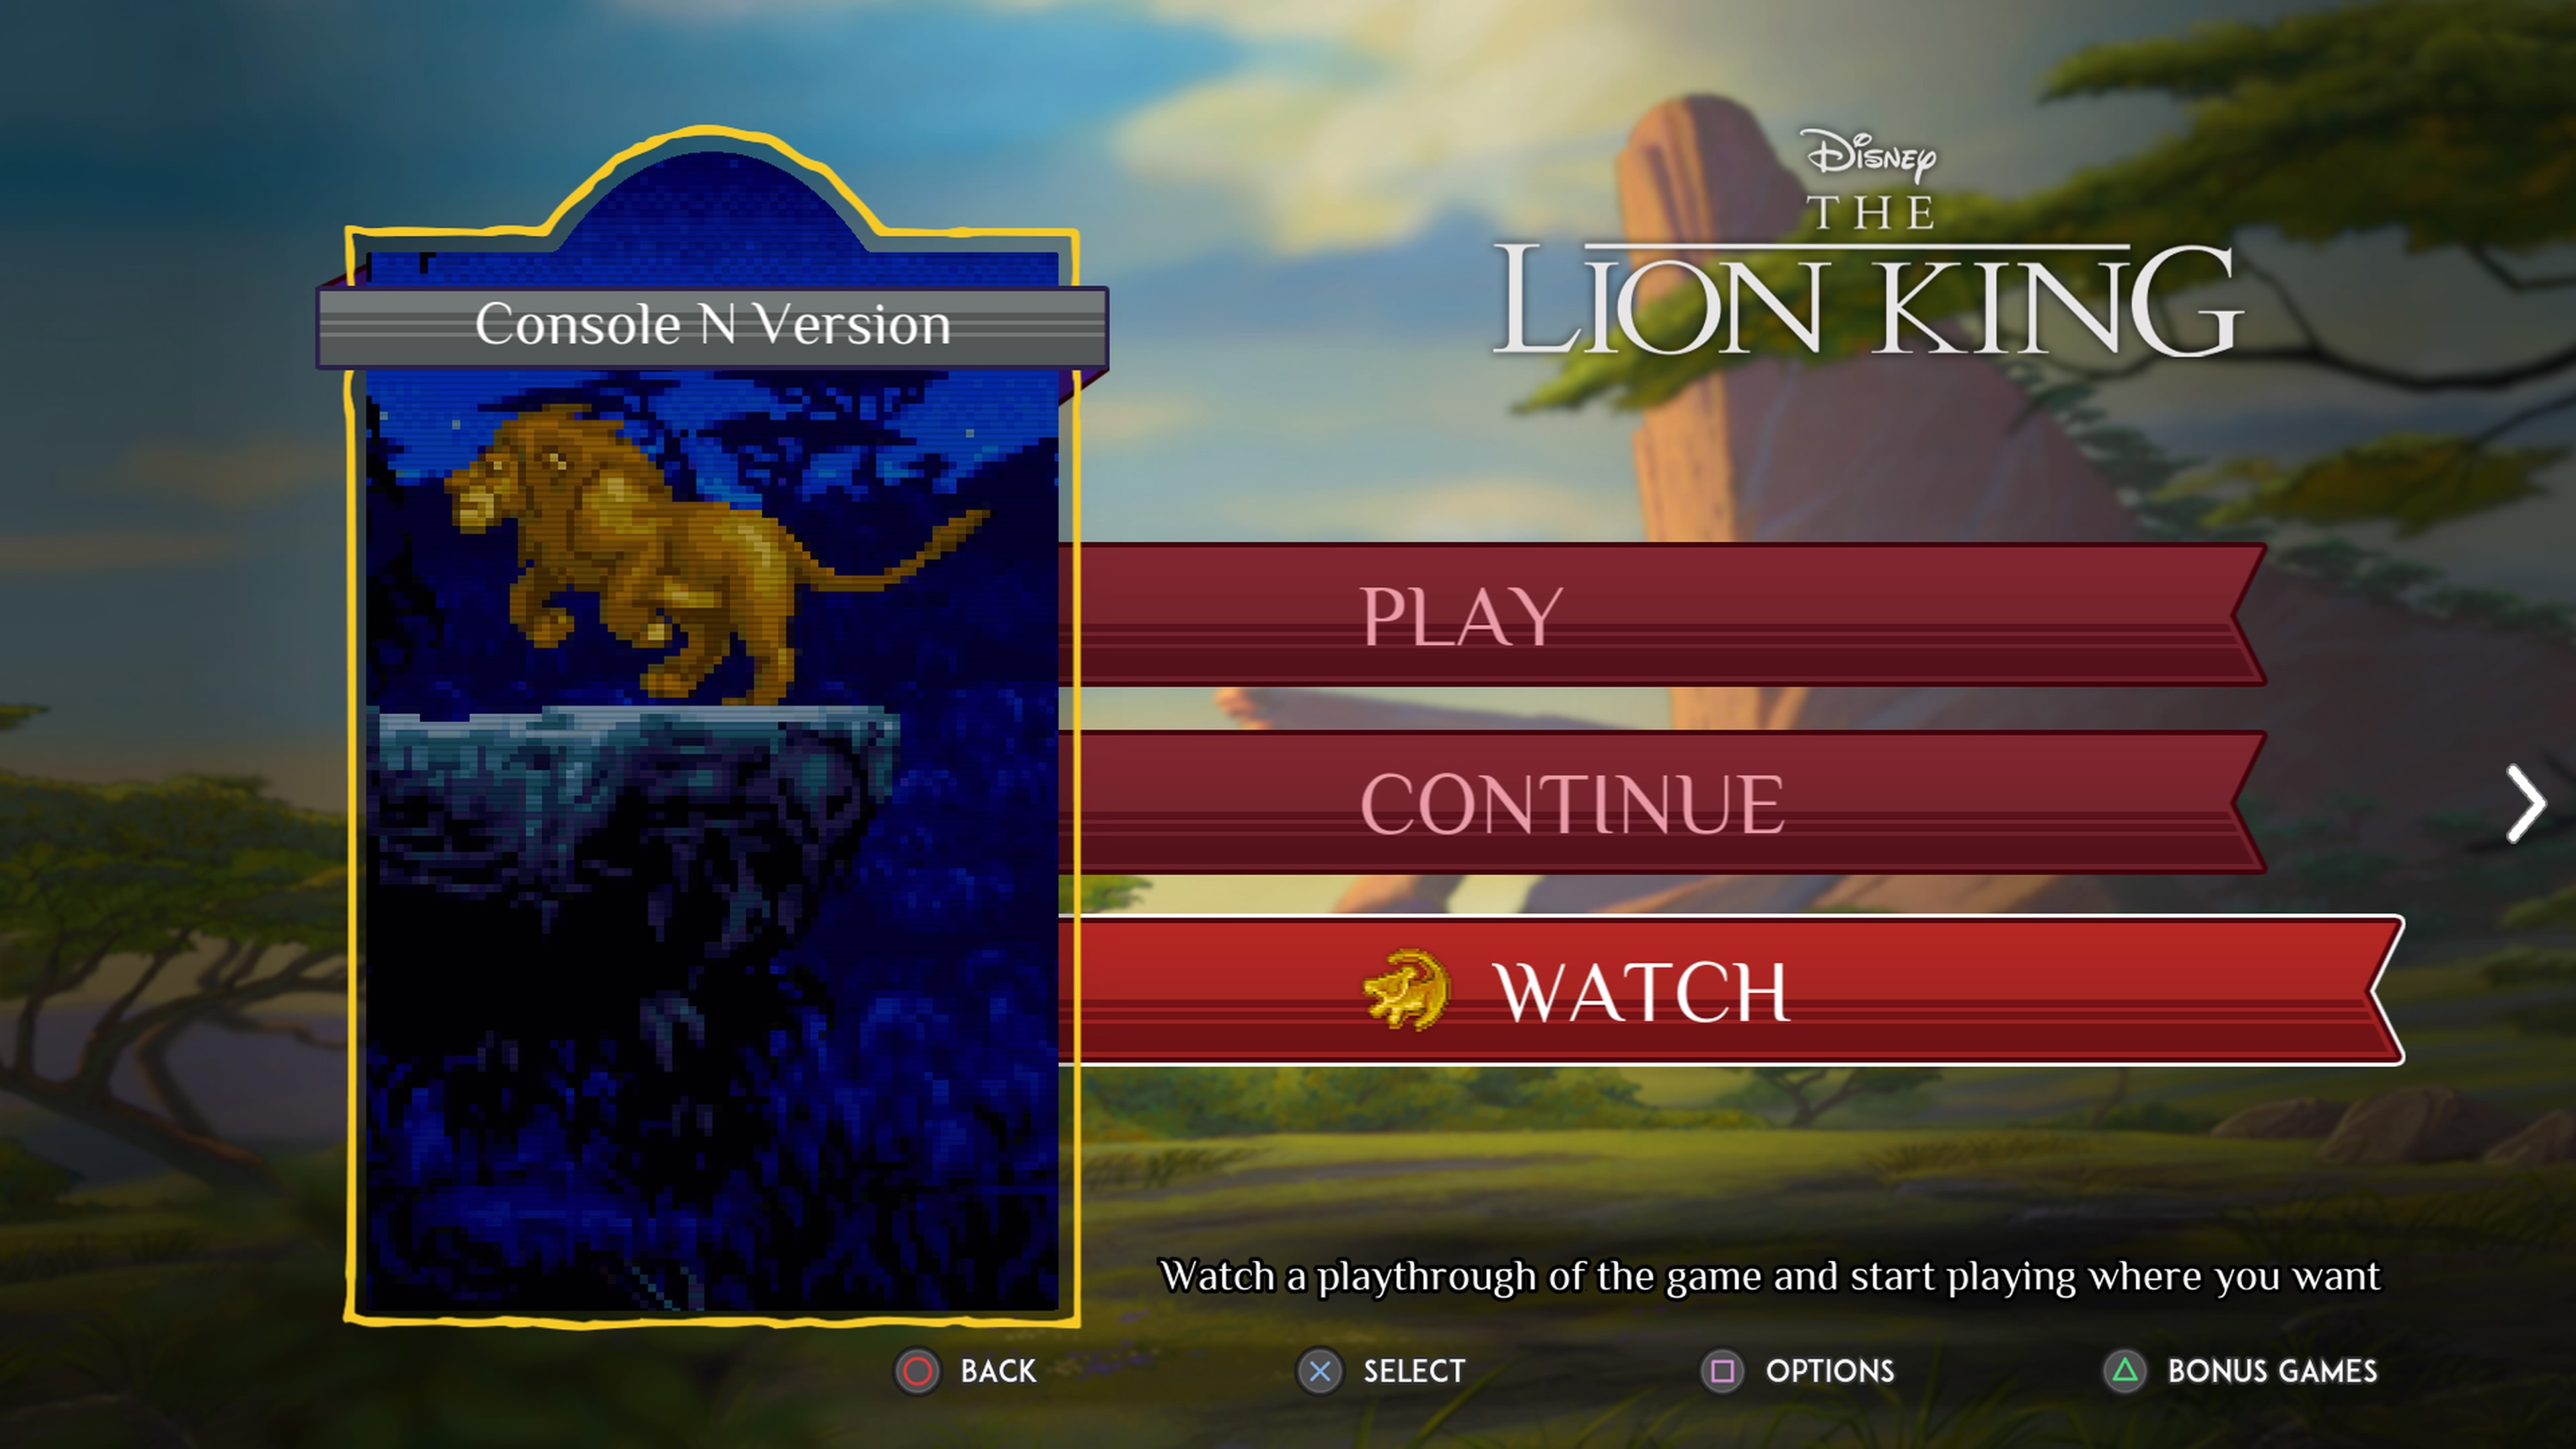 Disney Classic Games - Lion King - Achievement / Trophy Guide 